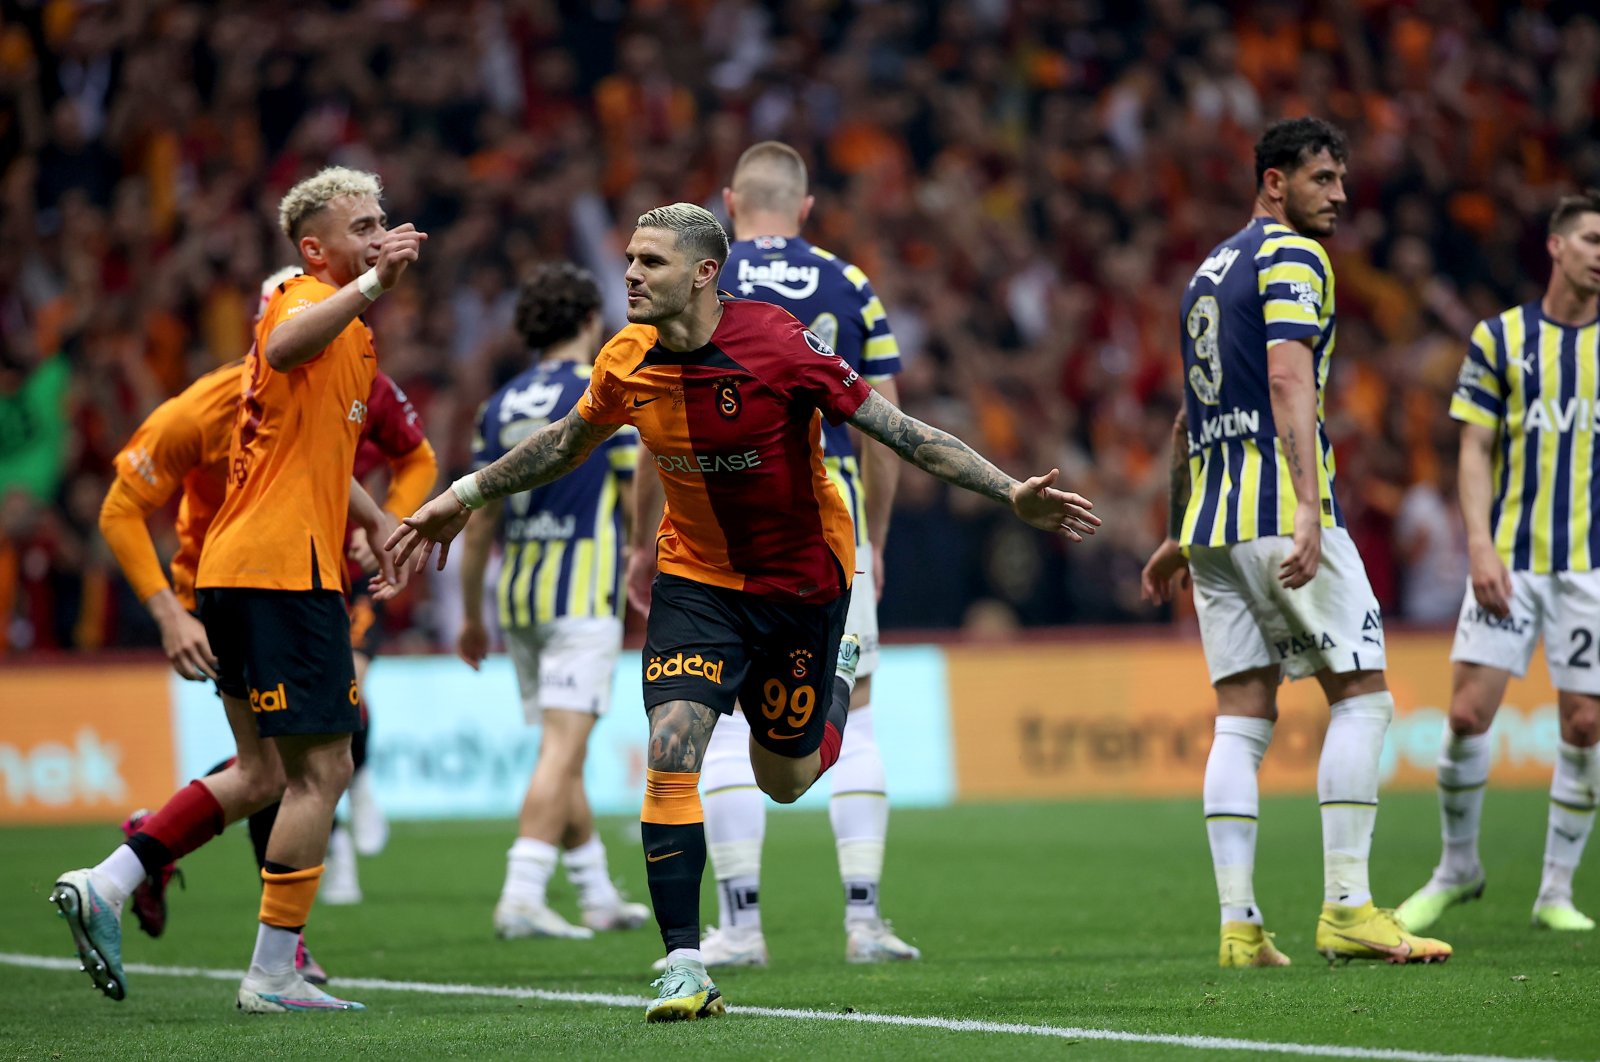 Juara Galatasaray berkuasa atas rival abadi Fenerbahçe